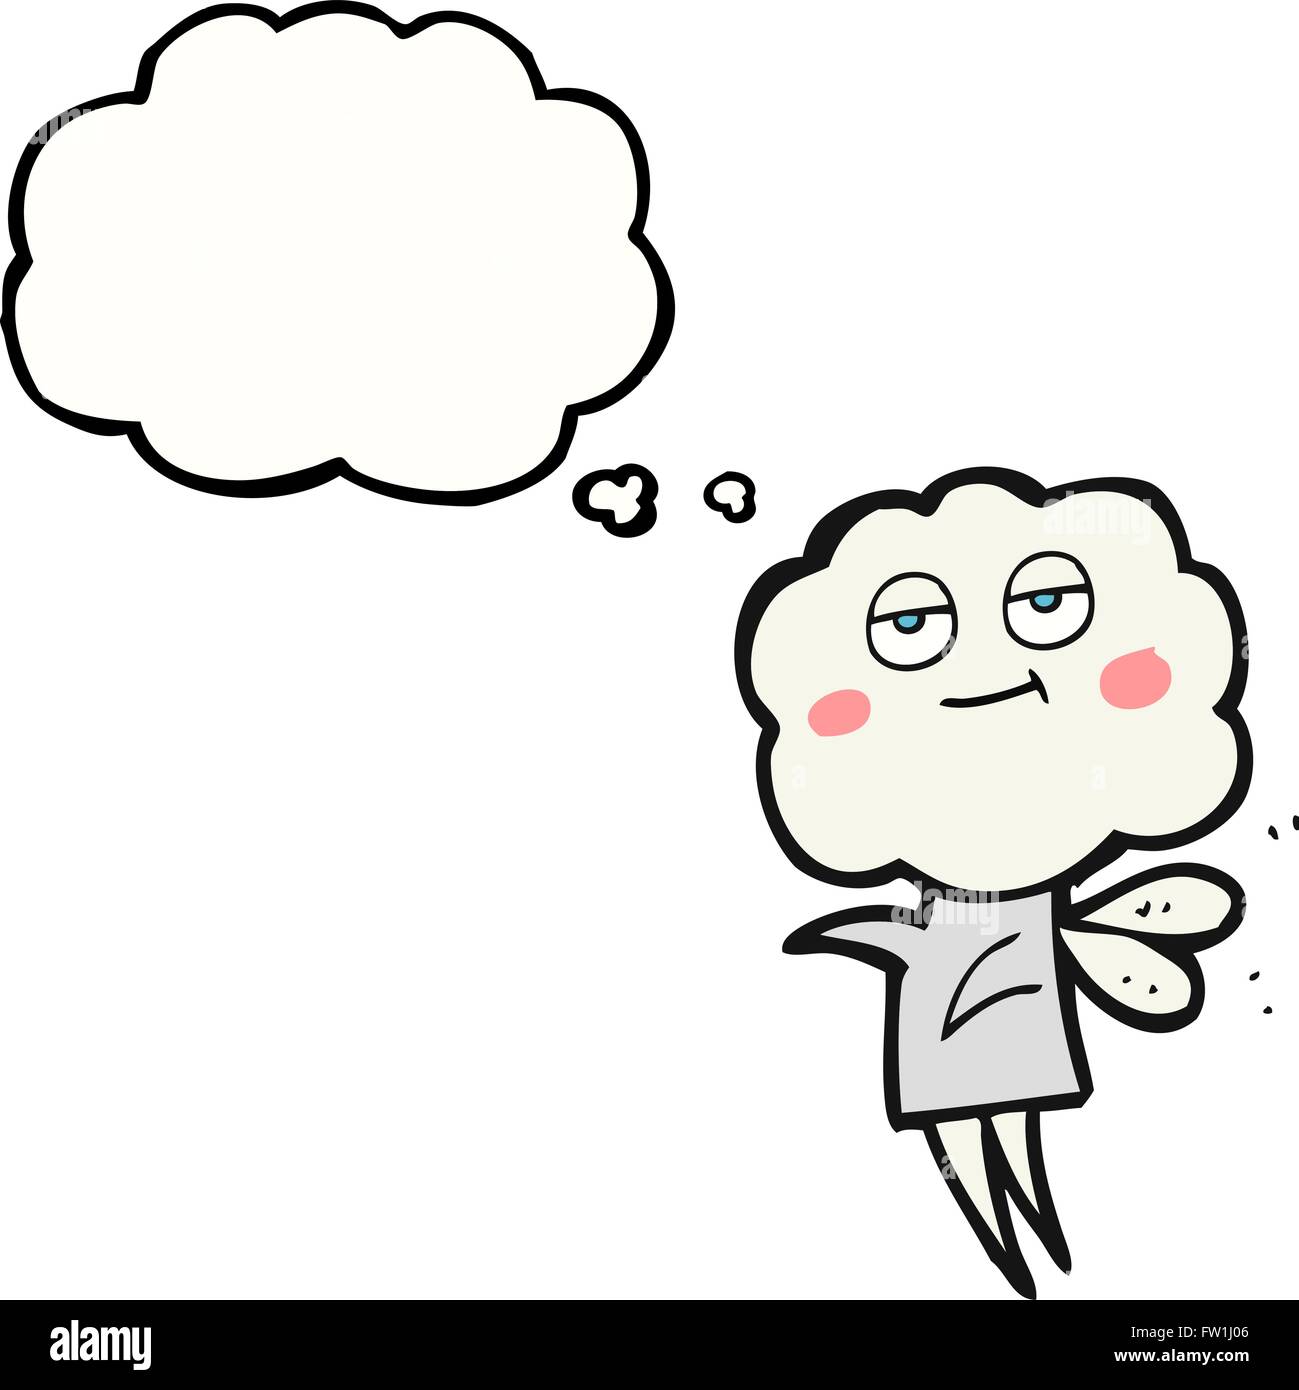 Freihändig gezeichnete Gedanken Bubble Cartoon süße Wolke Kopf imp Stock Vektor